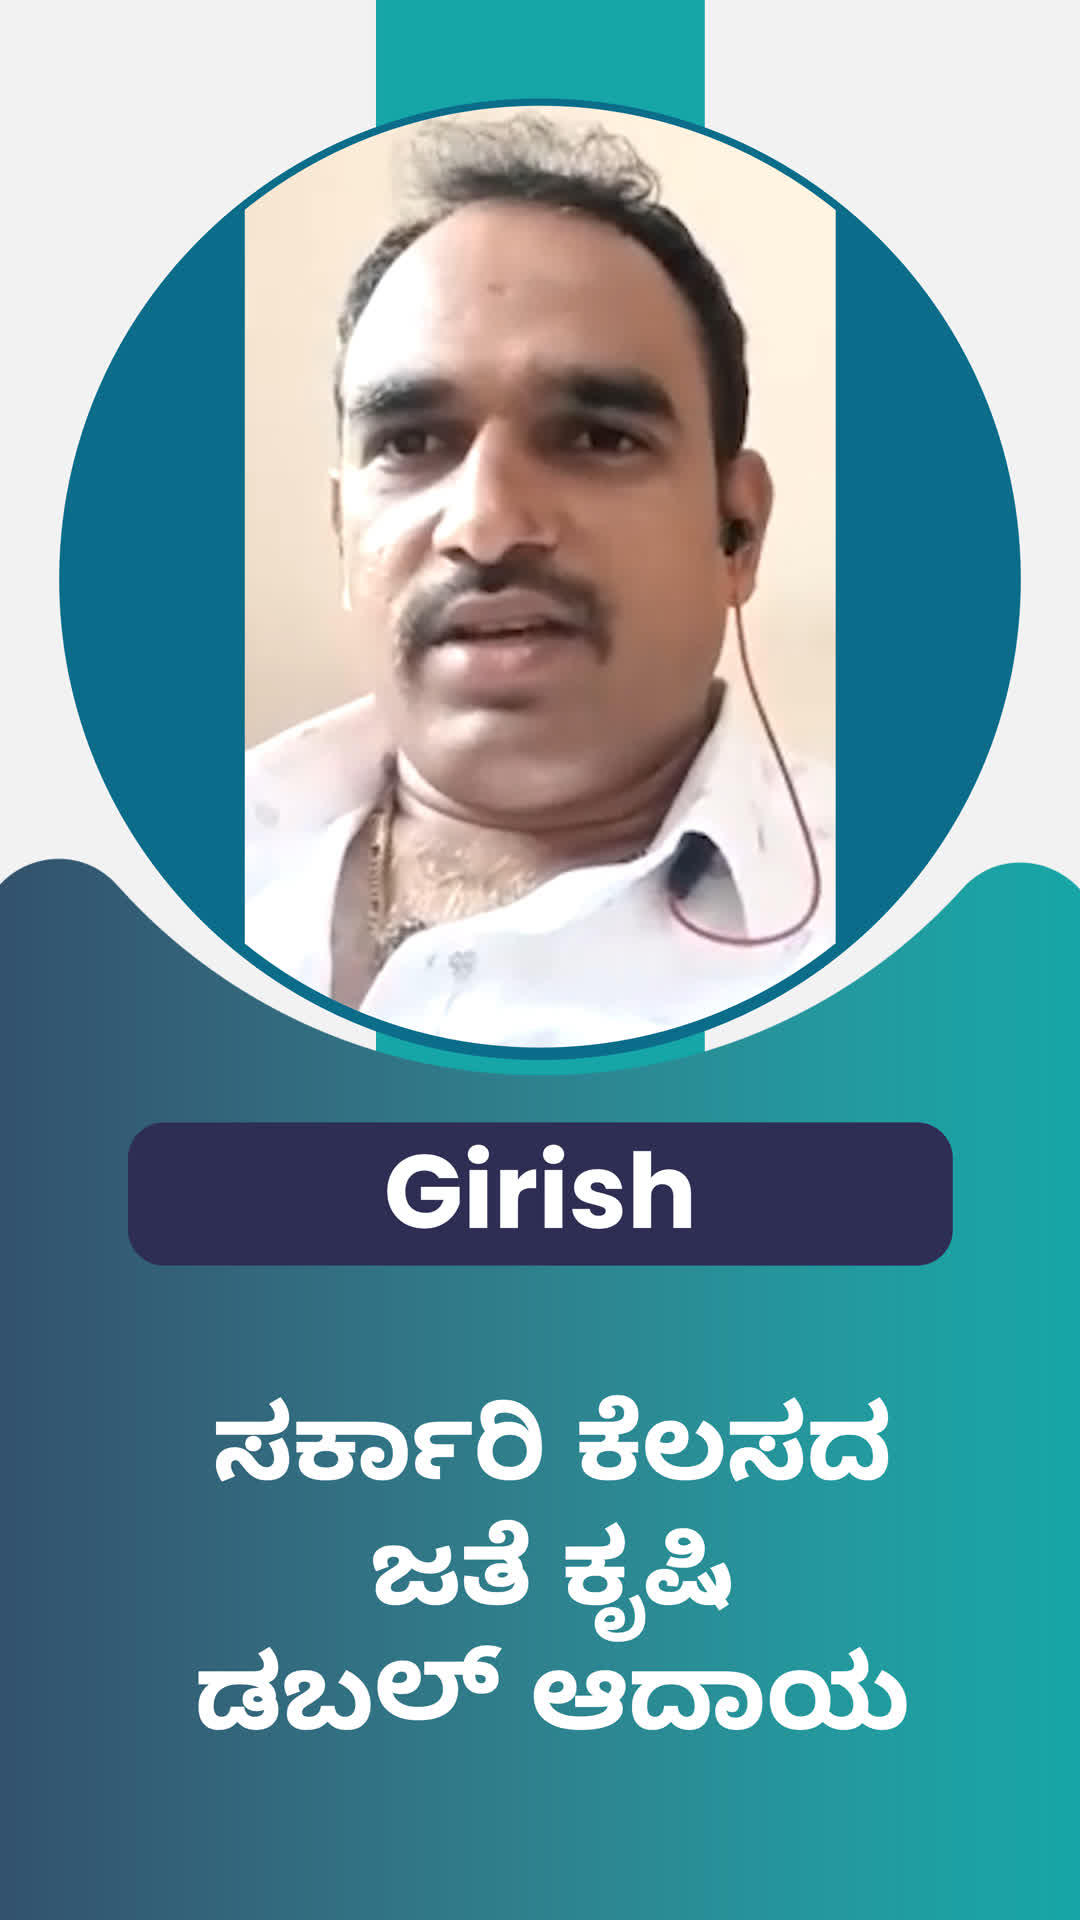 Girish's Honest Review of ffreedom app - Ramanagara ,Karnataka